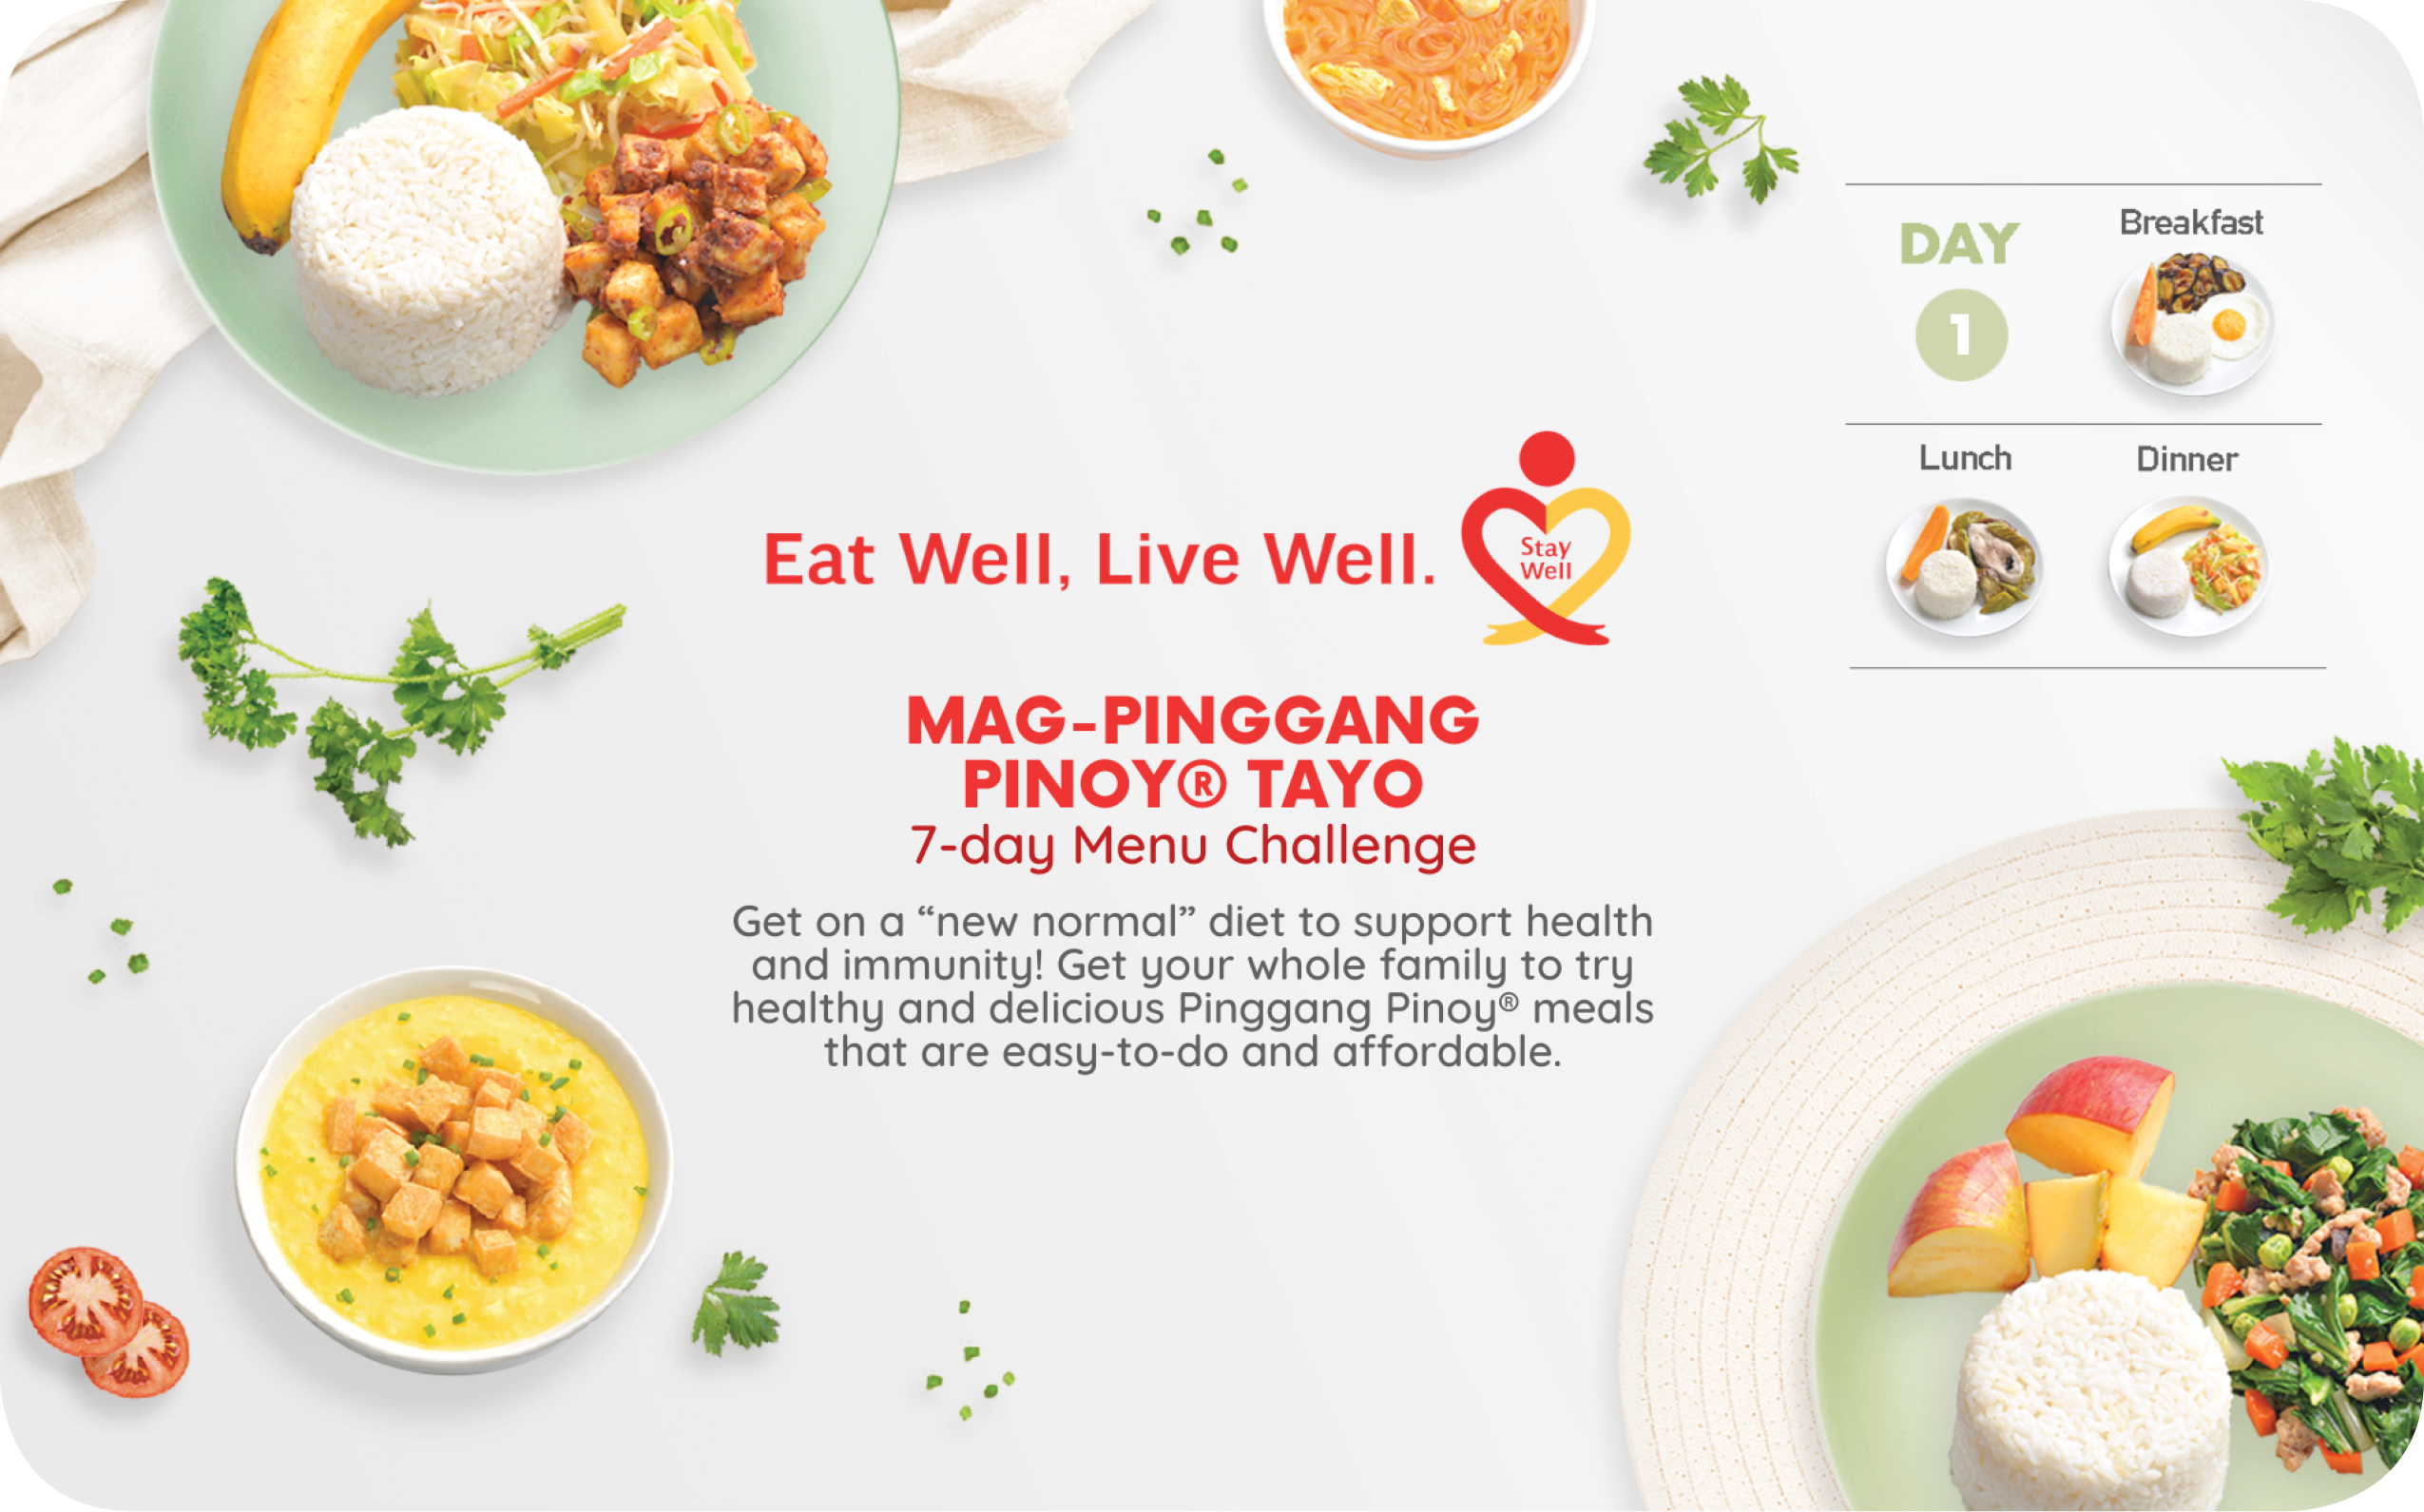 Mag-Pinggang Pinoy® Tayo 7-day Menu Challenge